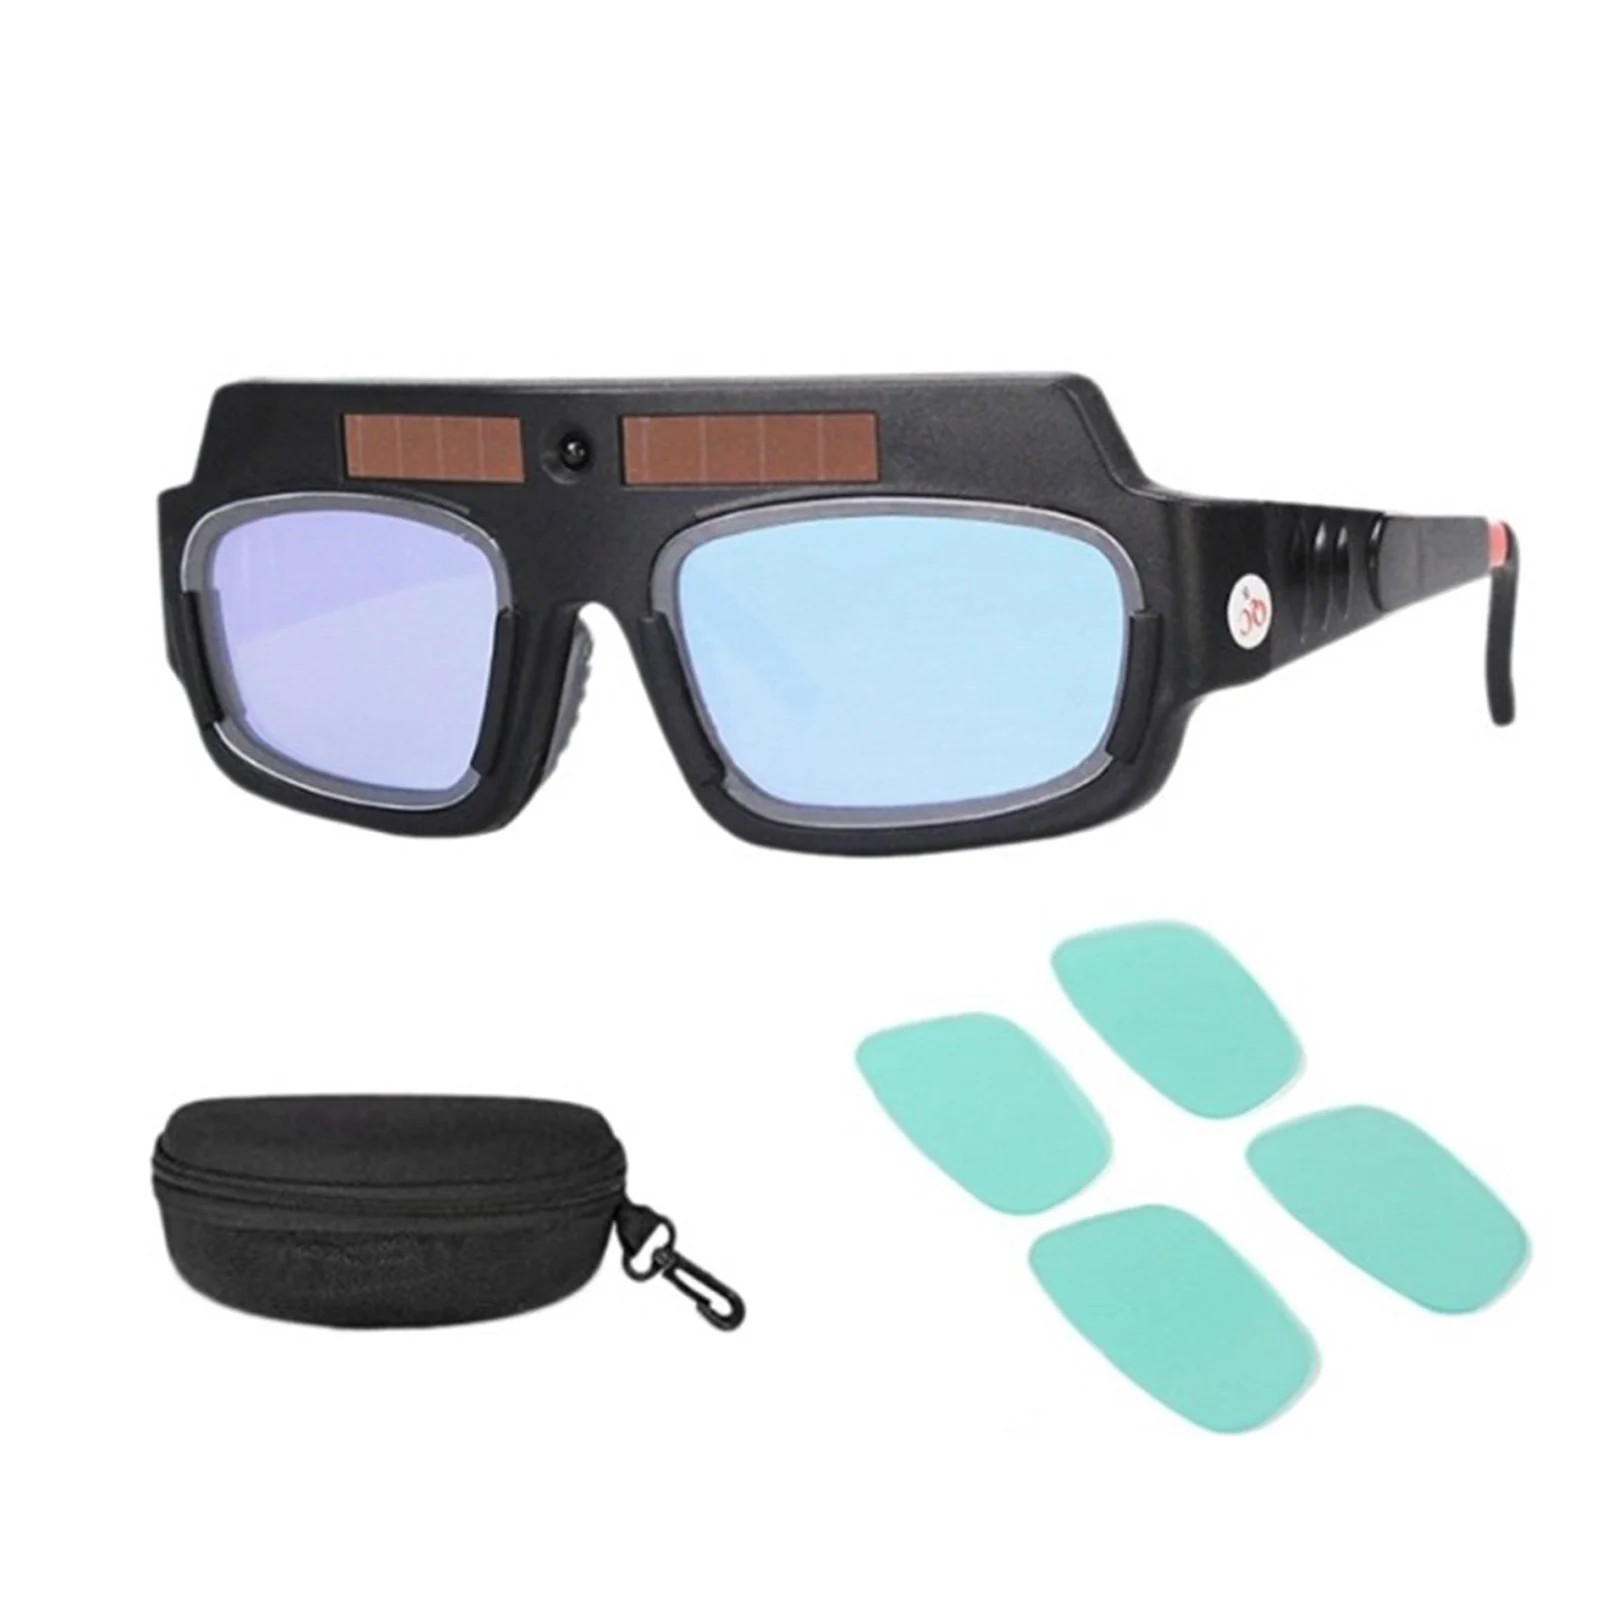 

Очки для сварки с электрозатемнением, специальные защитные очки для дуговой сварки аргоном, с дуговым и бликовым покрытием